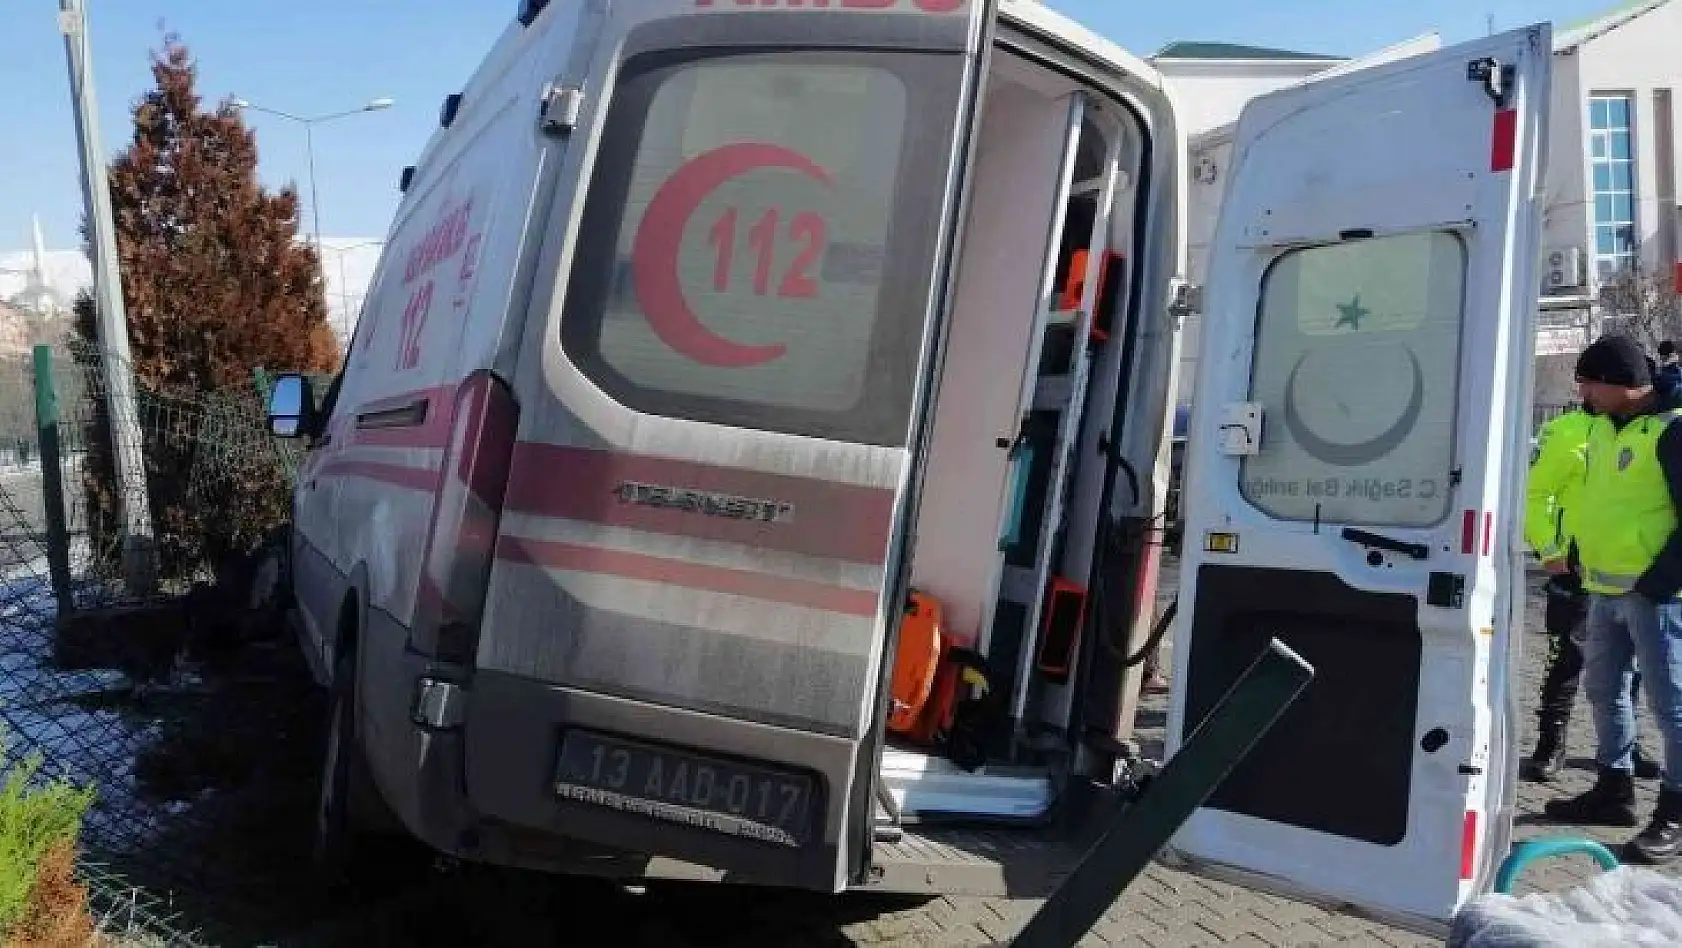 Bingöl'de ambulans ve otomobil çarpıştı: 5 yaralı